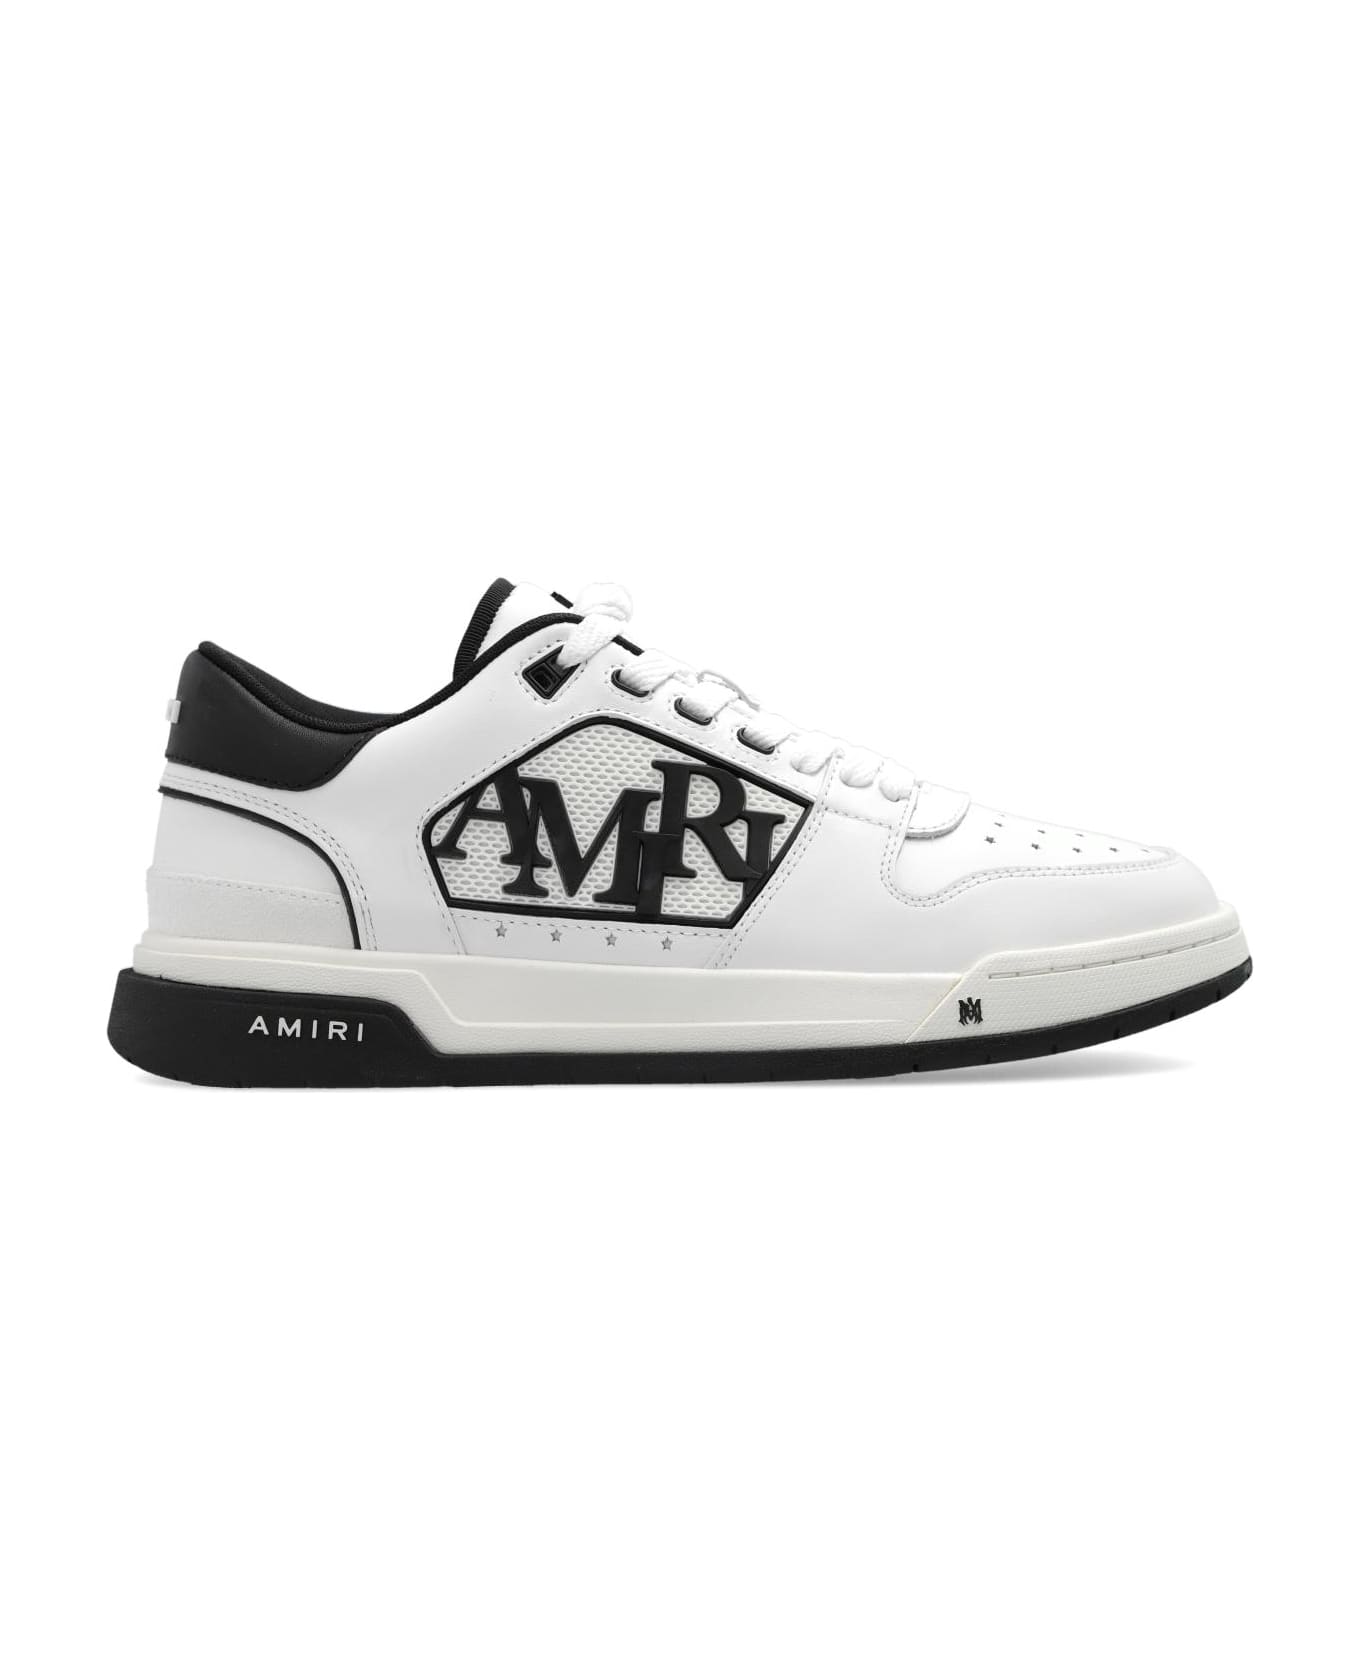 AMIRI 'classic Low Top' Sneakers - Bianco スニーカー